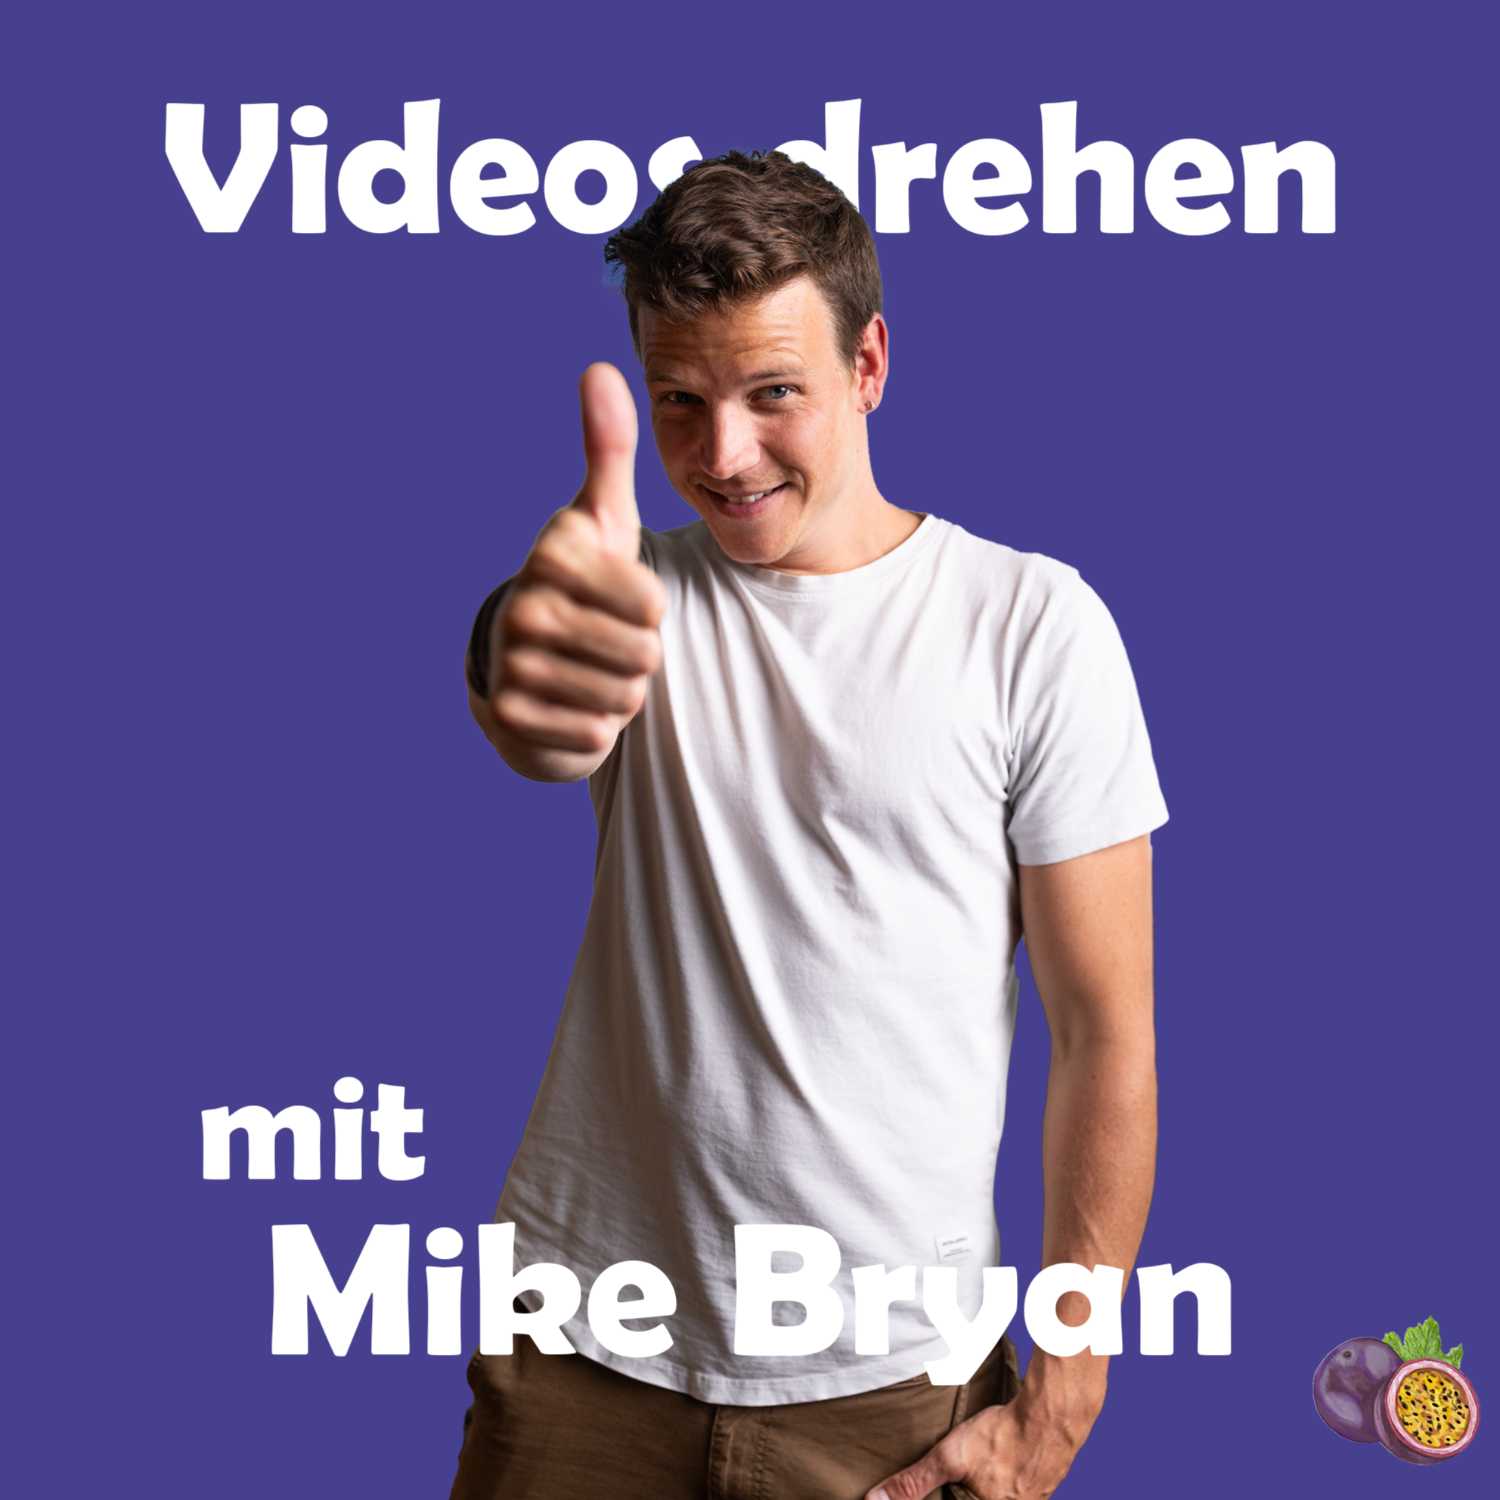 Videos drehen mit Mike Bryan